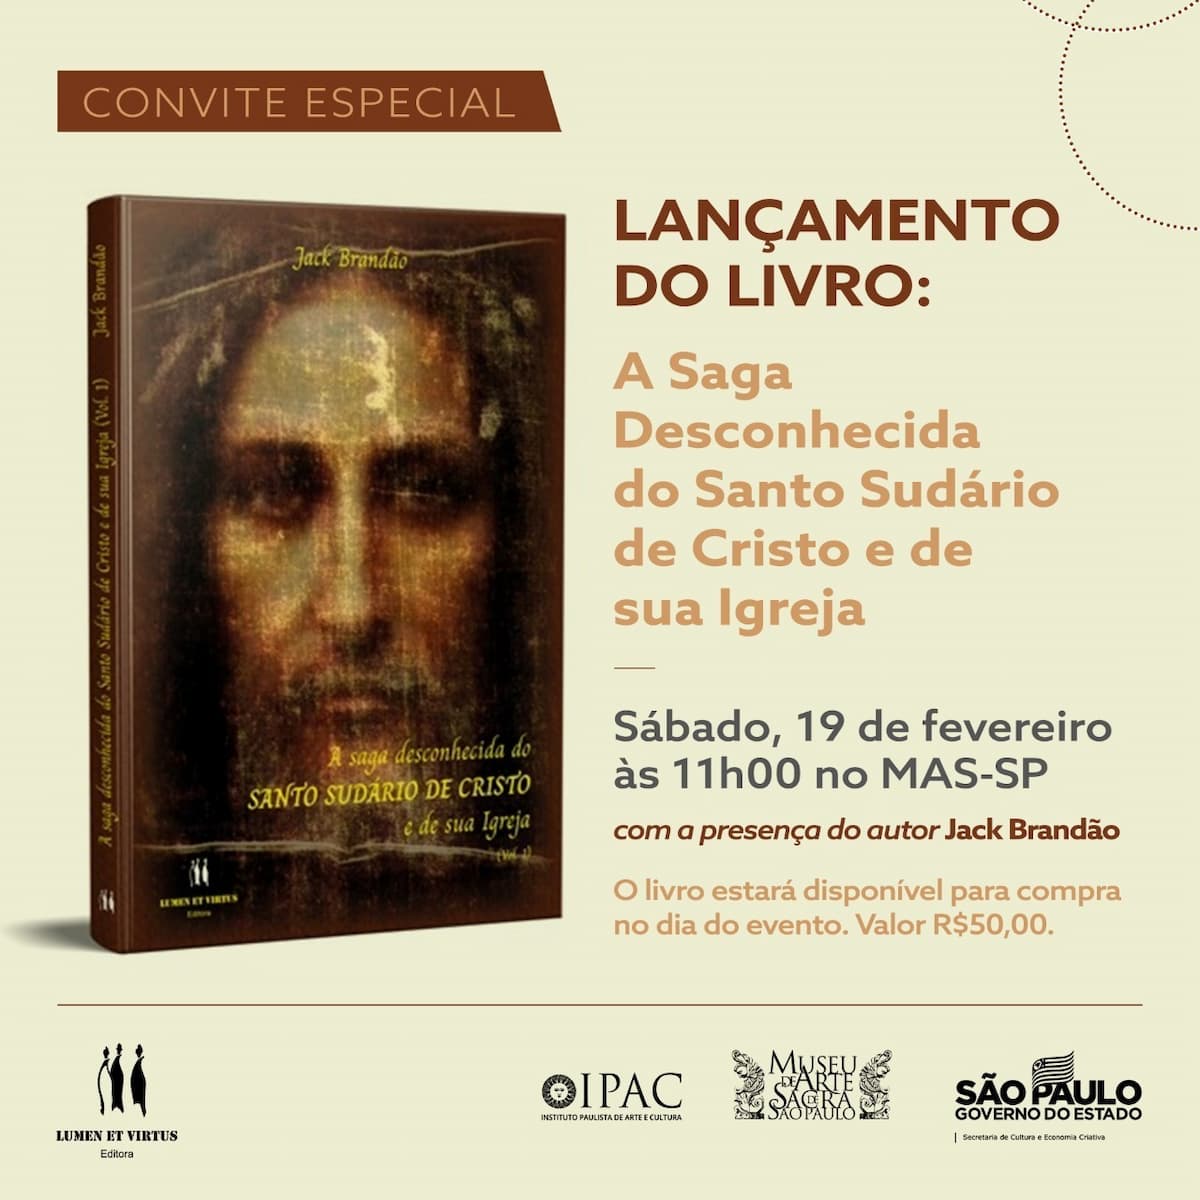 Livro "A saga desconhecida do SUDÁRIO DE CRISTO e de sua Igreja", Το βιβλίο - κάλυμμα, πρόσκληση. Αποκάλυψη.